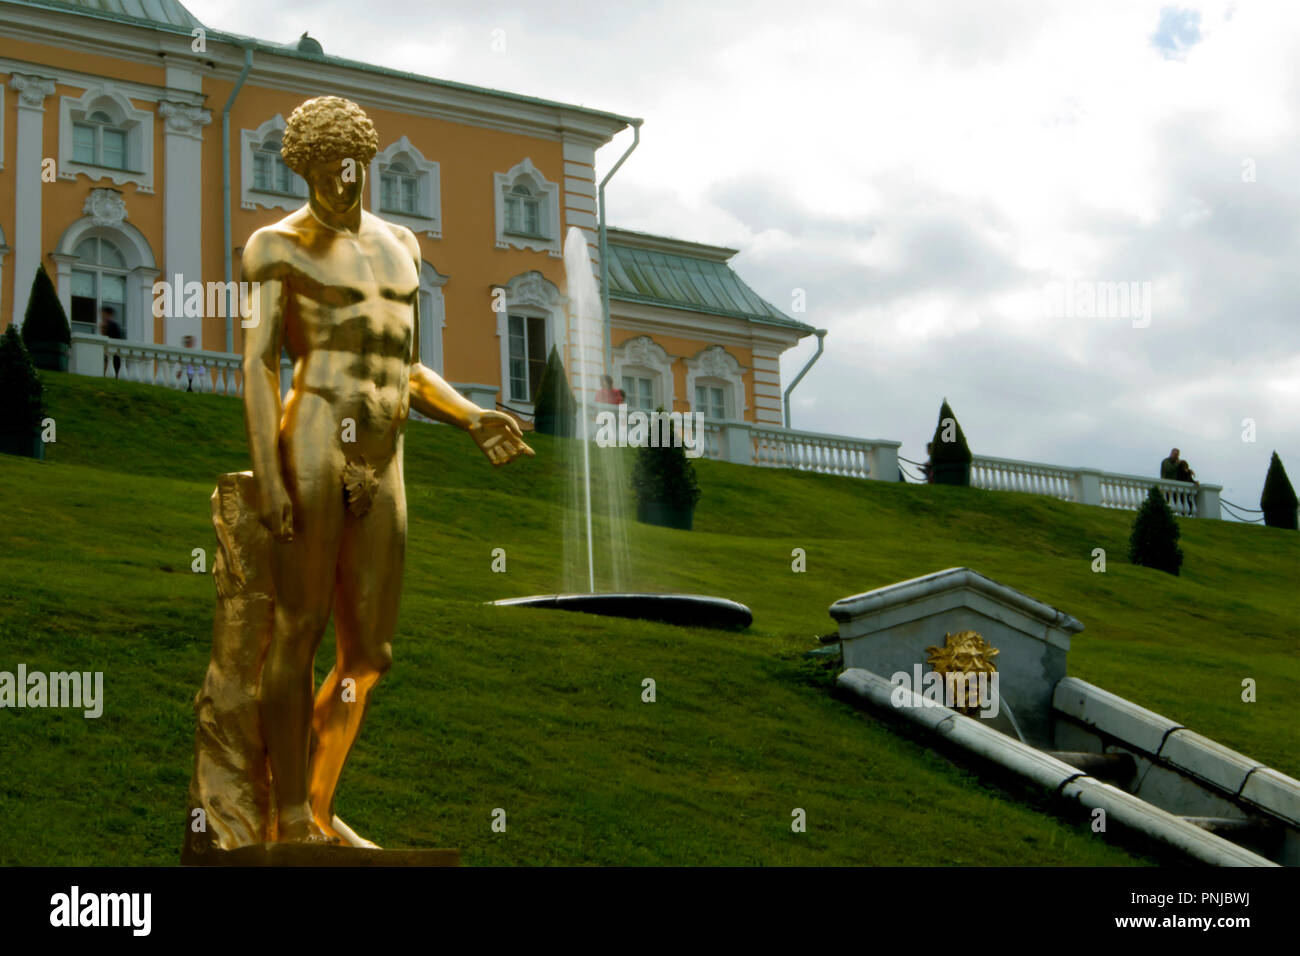 Vergoldete Statue des Kapitolinischen Antinous gegen grasigen Hang mit Brunnen und großen Schloss Peterhof in St. Petersburg, Russland, 18. Jahrhundert Sehenswürdigkeiten Stockfoto